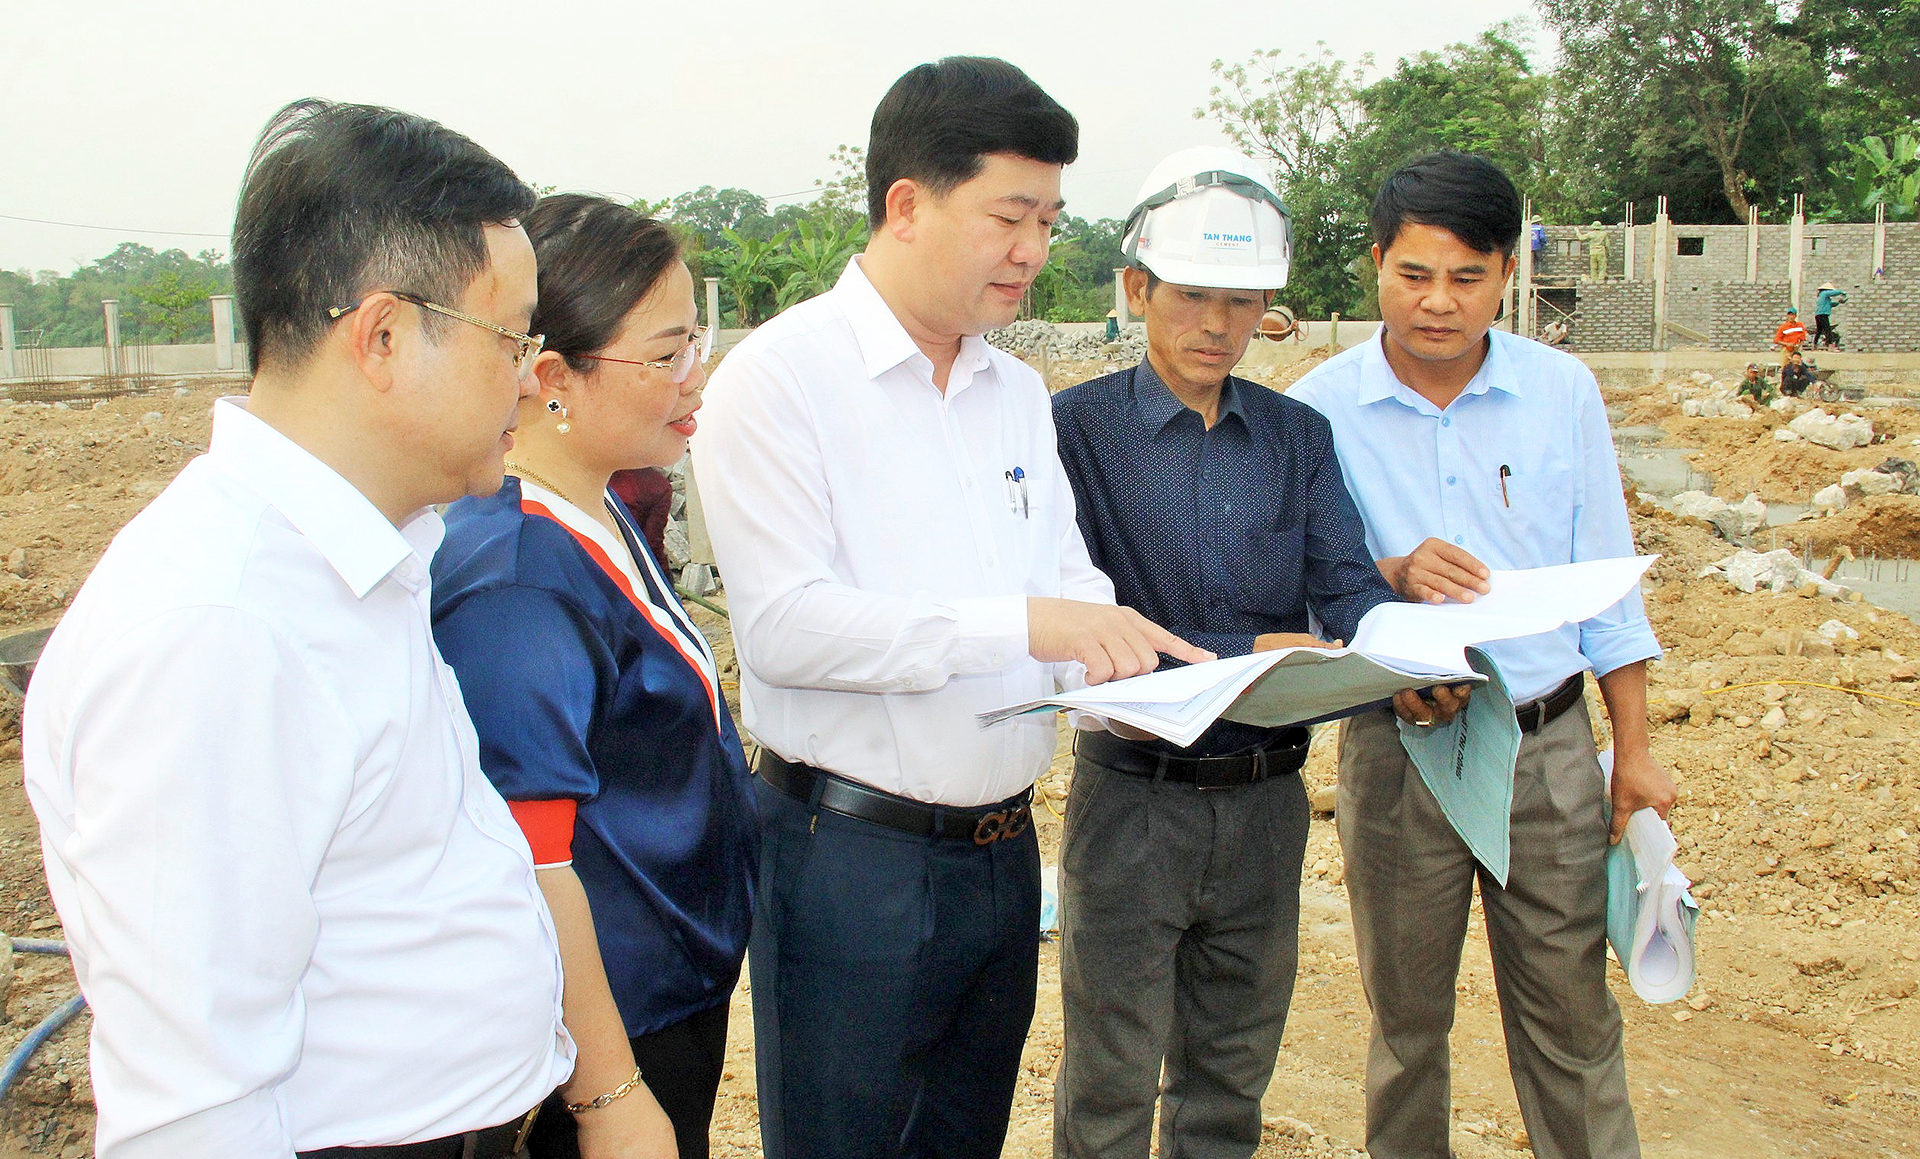 Đồng chí Nguyễn Hữu Sáng – Ủy viên BCH Đảng bộ tỉnh, Bí thư Huyện ủy, Chủ tịch HĐND huyện Anh Sơn kiểm tra kiểm tra dự án đầu tư trên địa bàn.